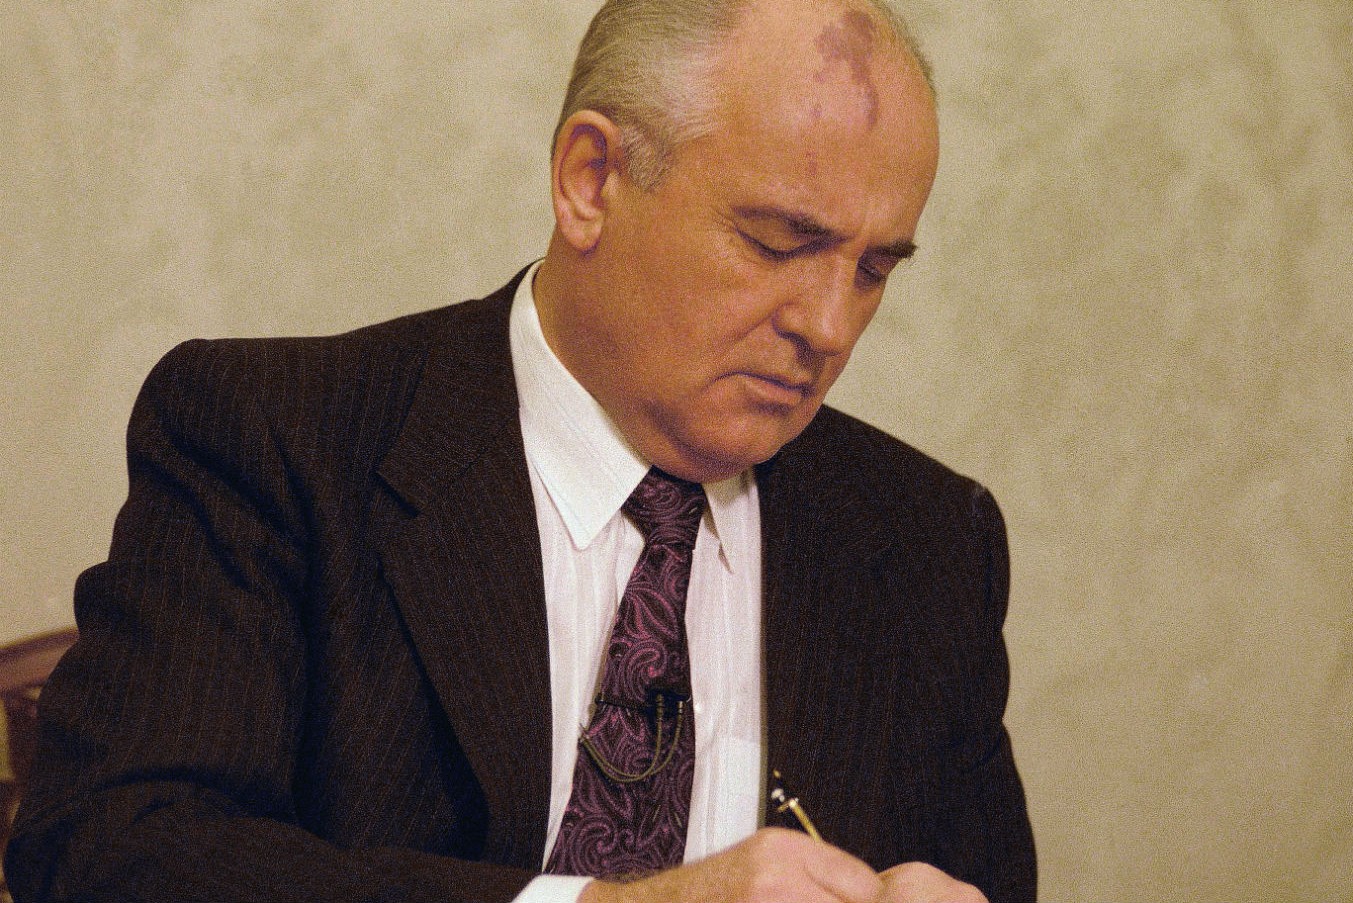 Poslednji lider Sovjetskog Saveza Mihail Gorbačov tokom potpisavanja ukaza o davanju kontrole nad nuklearnim oružjem Borisu Jeljcinu u Kremlju, Moskva, 25. decembar 1991. (Foto: AP Photo)